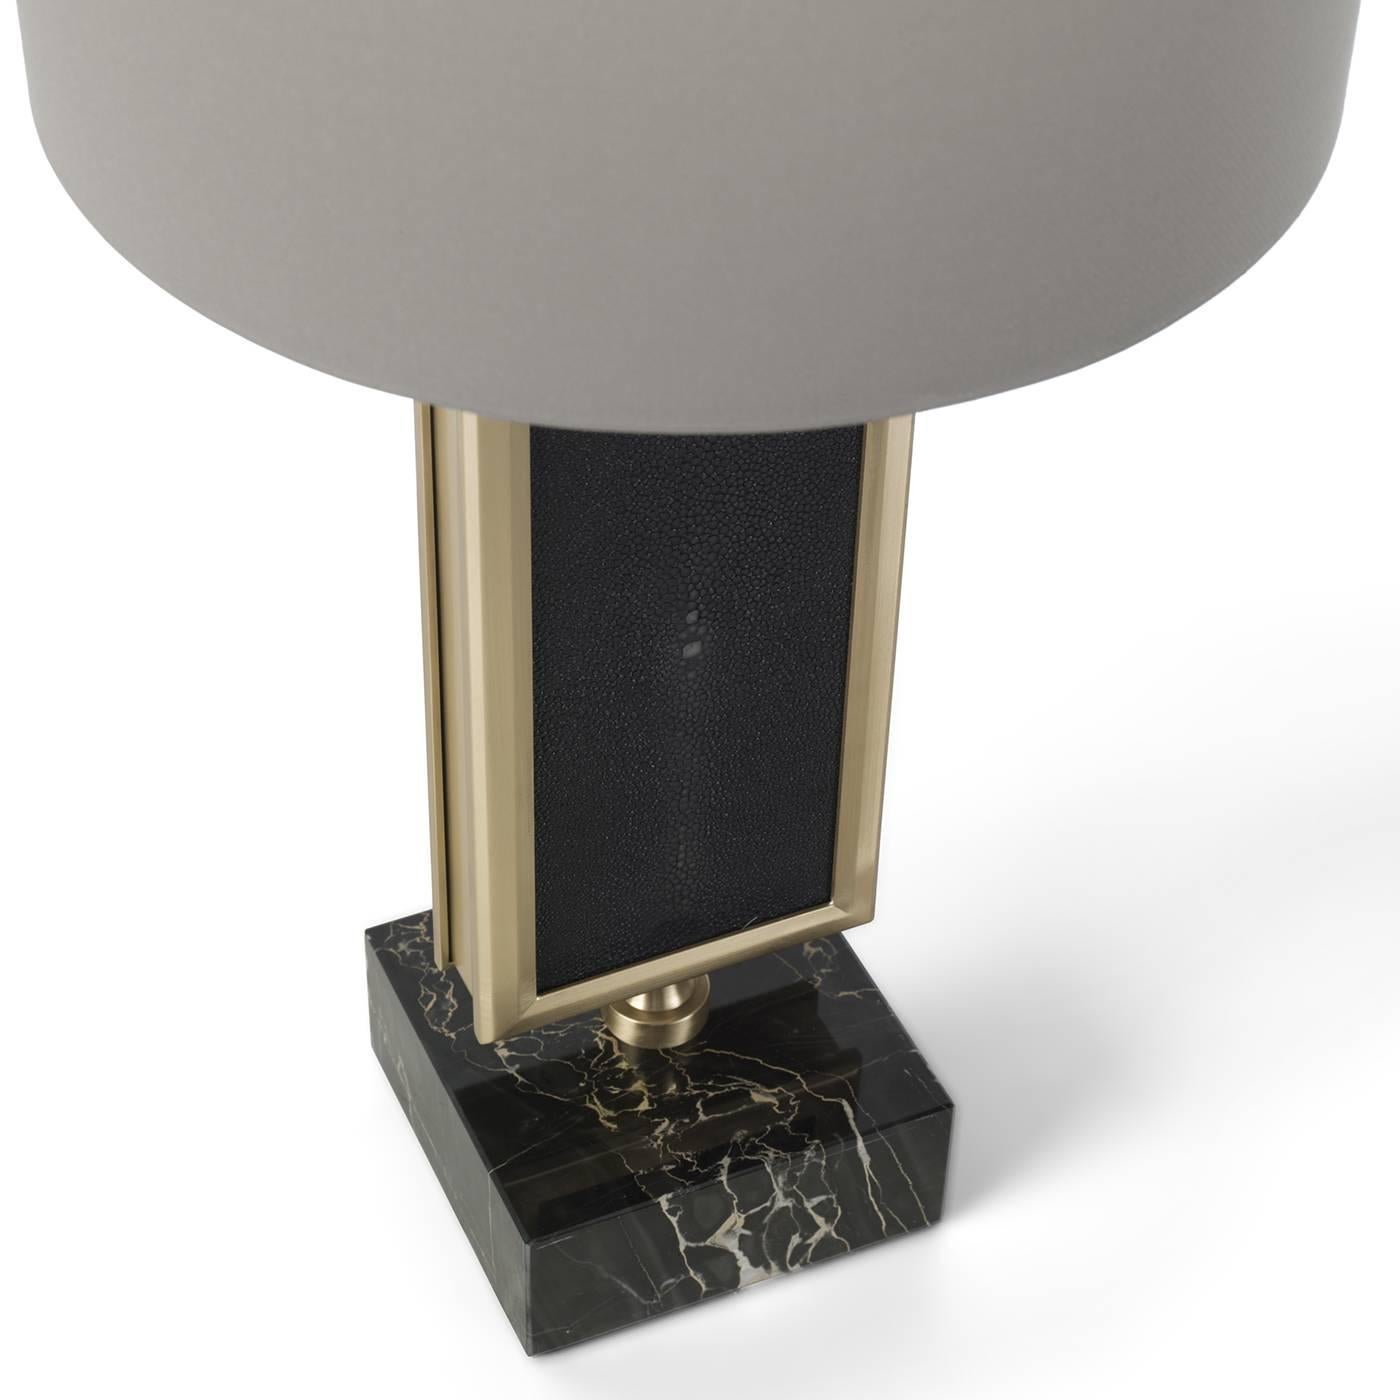 Cette lampe à poser sophistiquée présente des matériaux nobles et un savoir-faire traditionnel associés à un design contemporain, pour un effet final intemporel et élégant qui fera sensation dans n'importe quel décor. La base est un cube de marbre